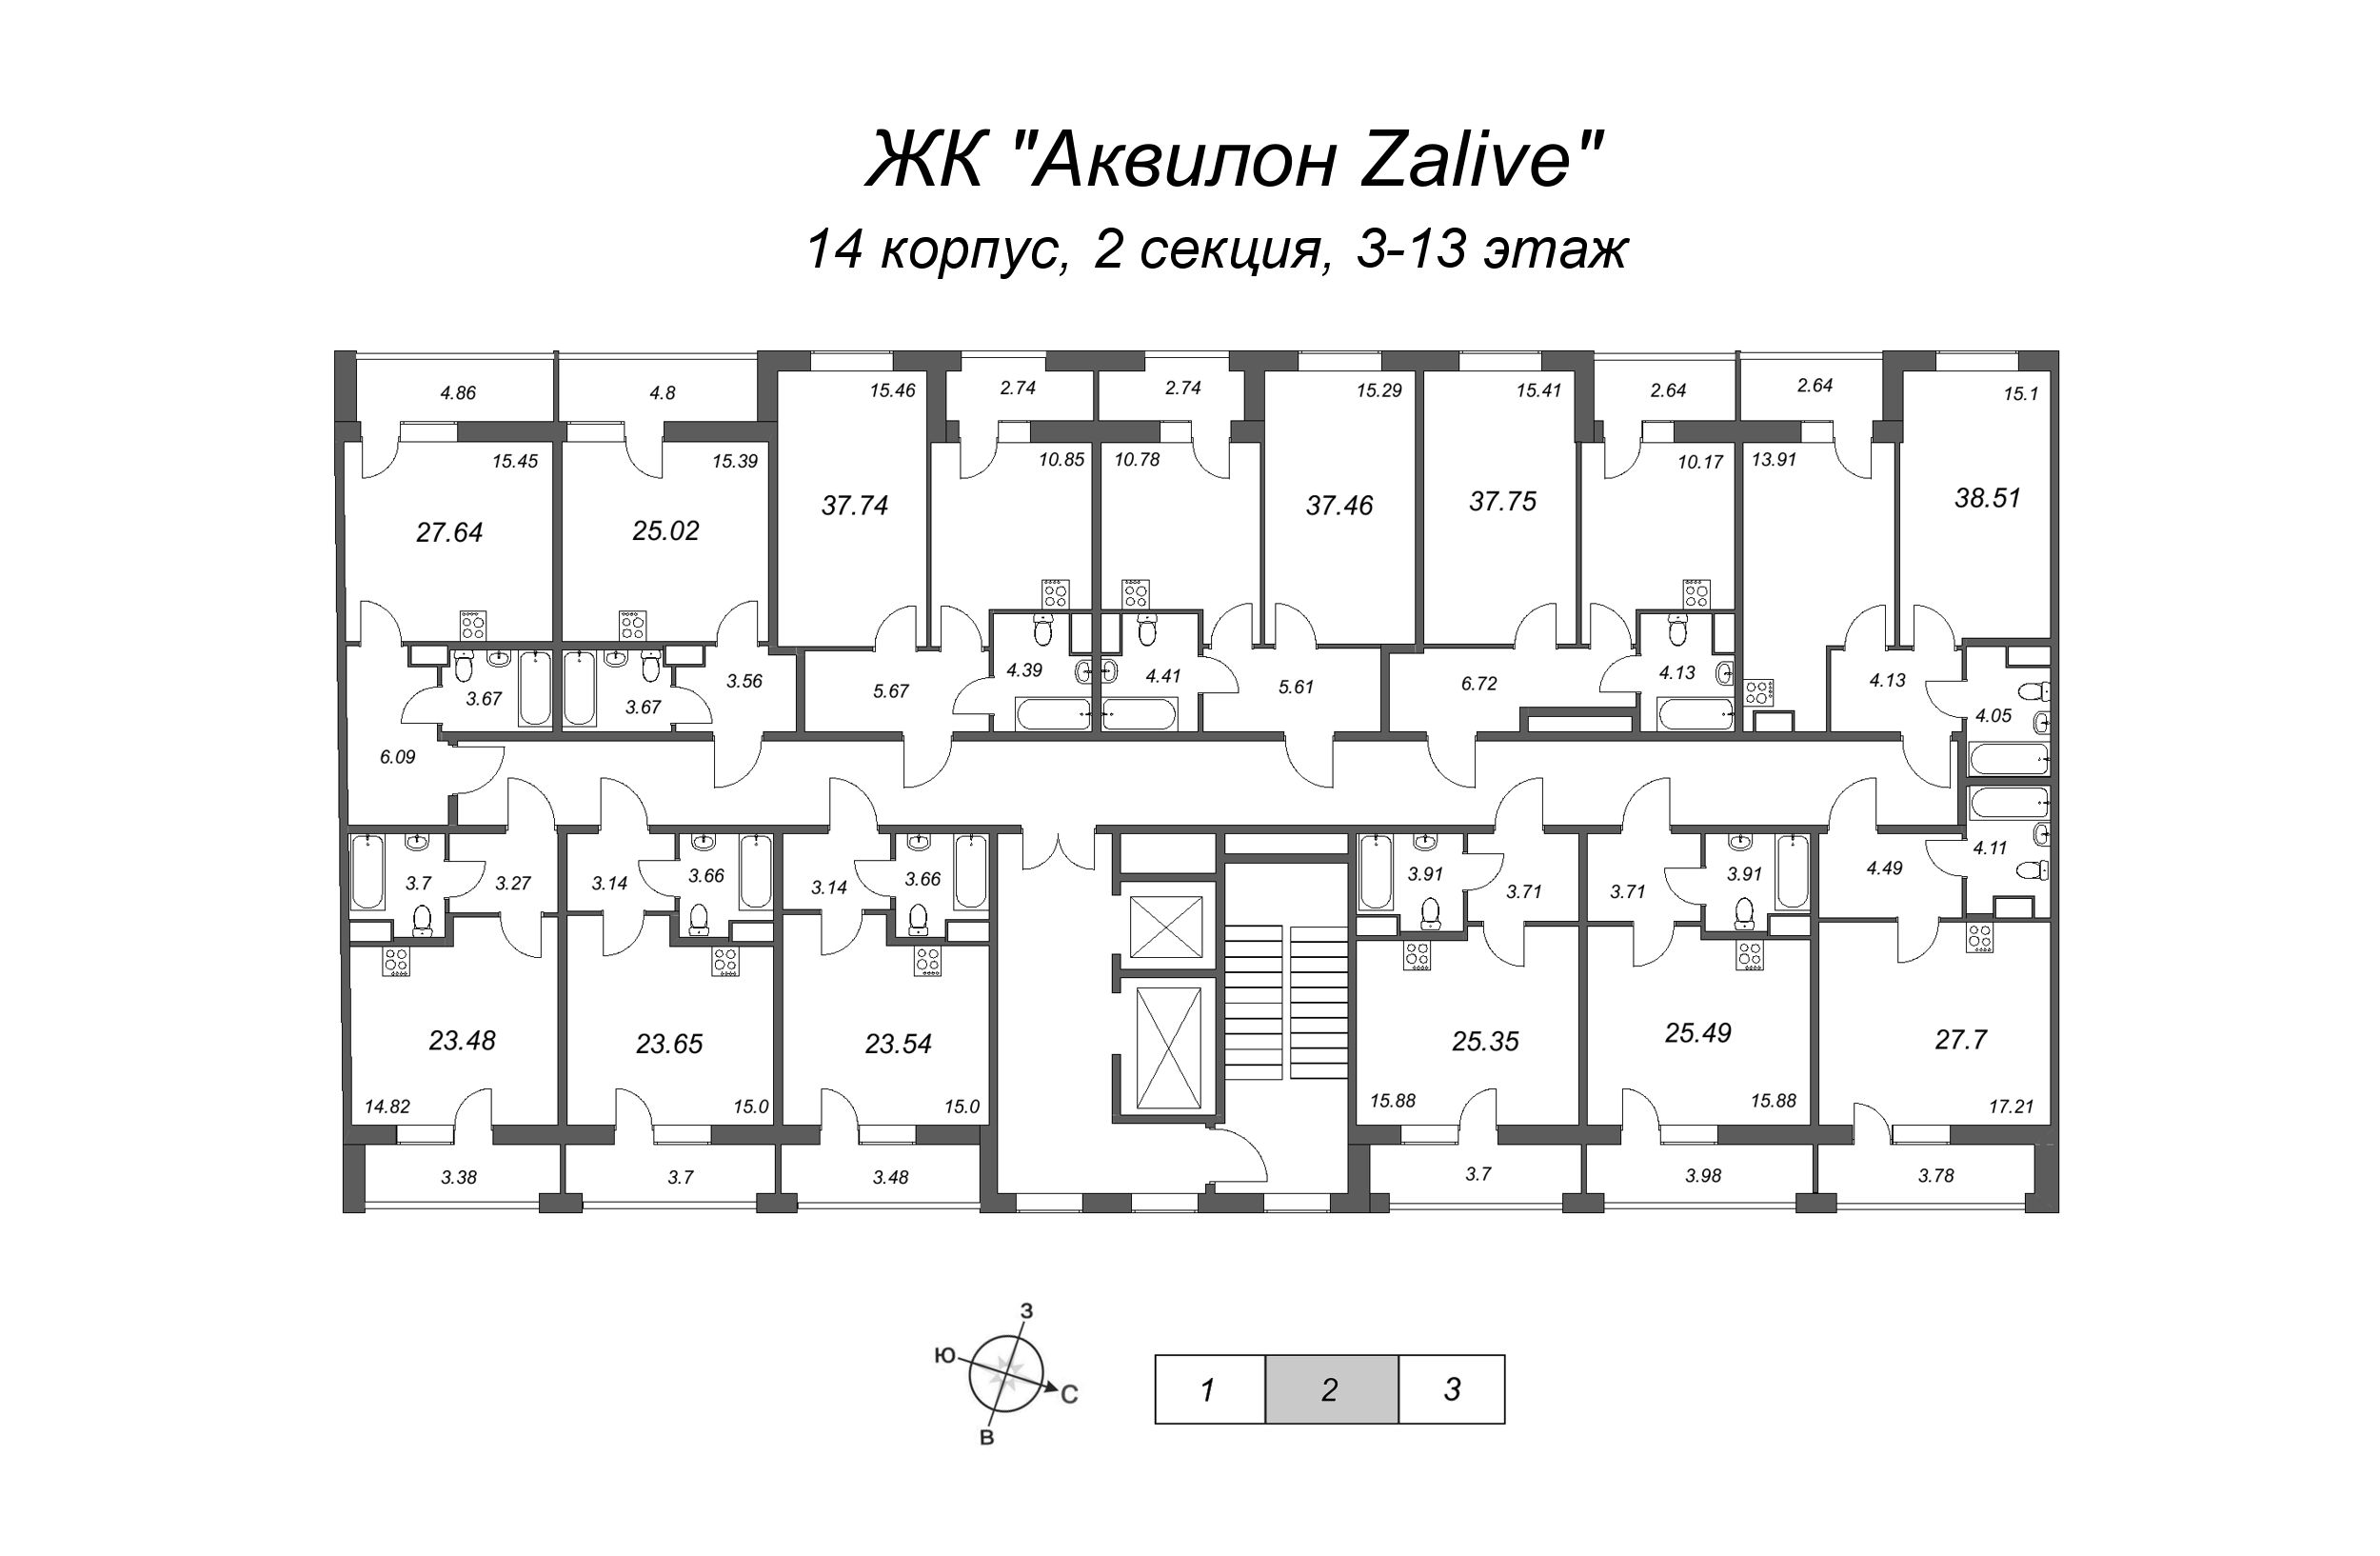 1-комнатная квартира, 37.6 м² в ЖК "Аквилон Zalive" - планировка этажа